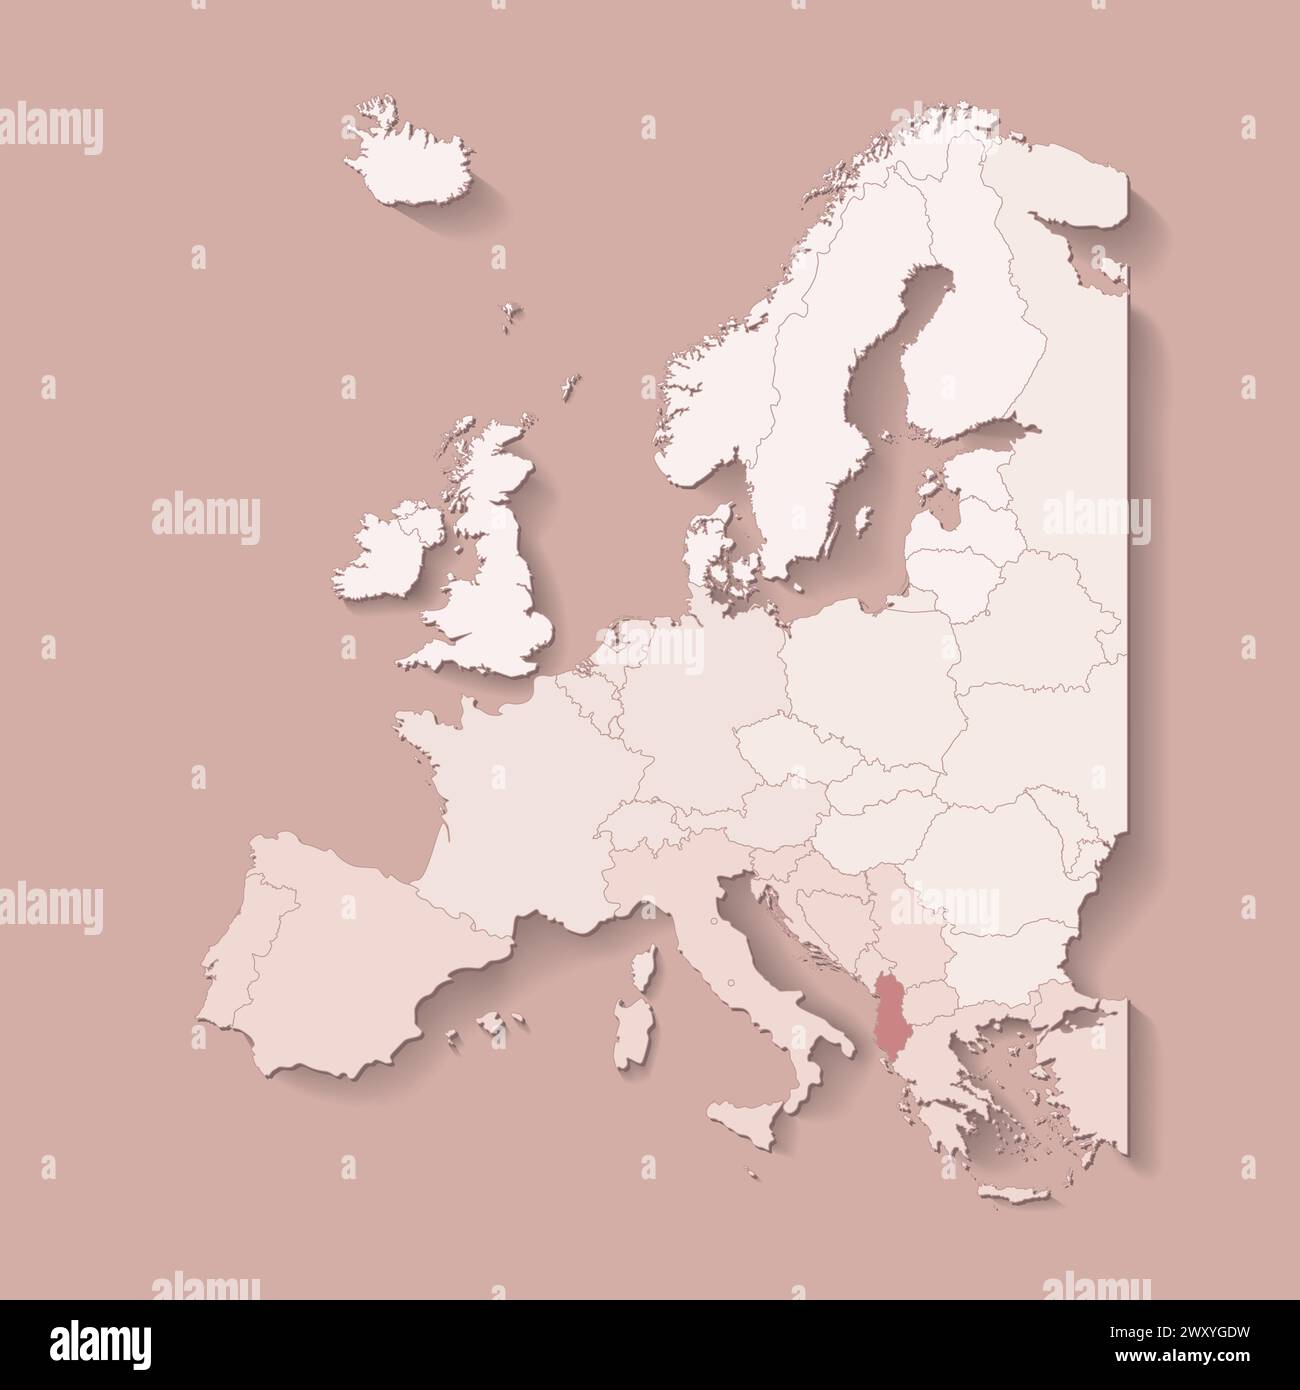 Illustrazione vettoriale con terra europea con confini di stati e paese contrassegnato Albania. Mappa politica di colore marrone con occidentale, sud e così via Illustrazione Vettoriale